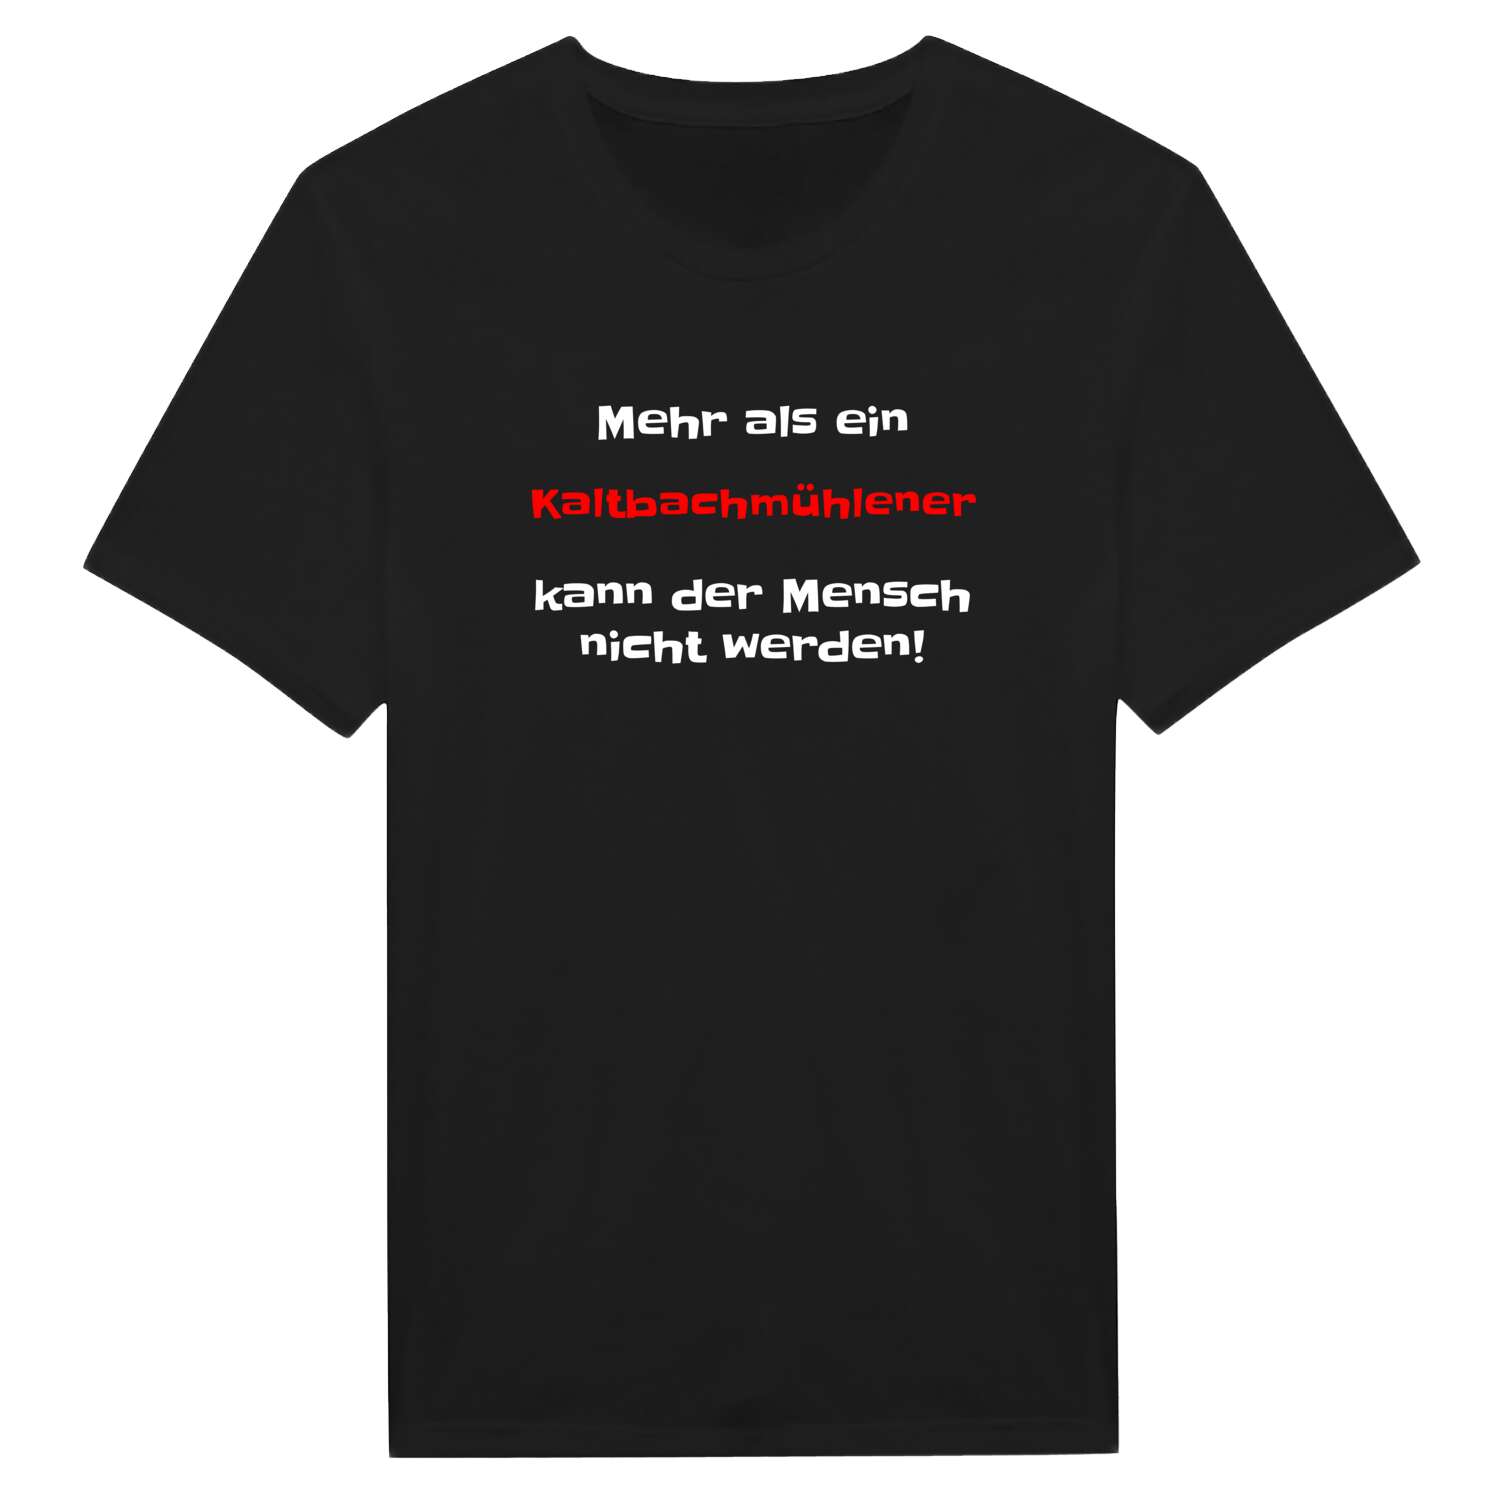 Kaltbachmühle T-Shirt »Mehr als ein«